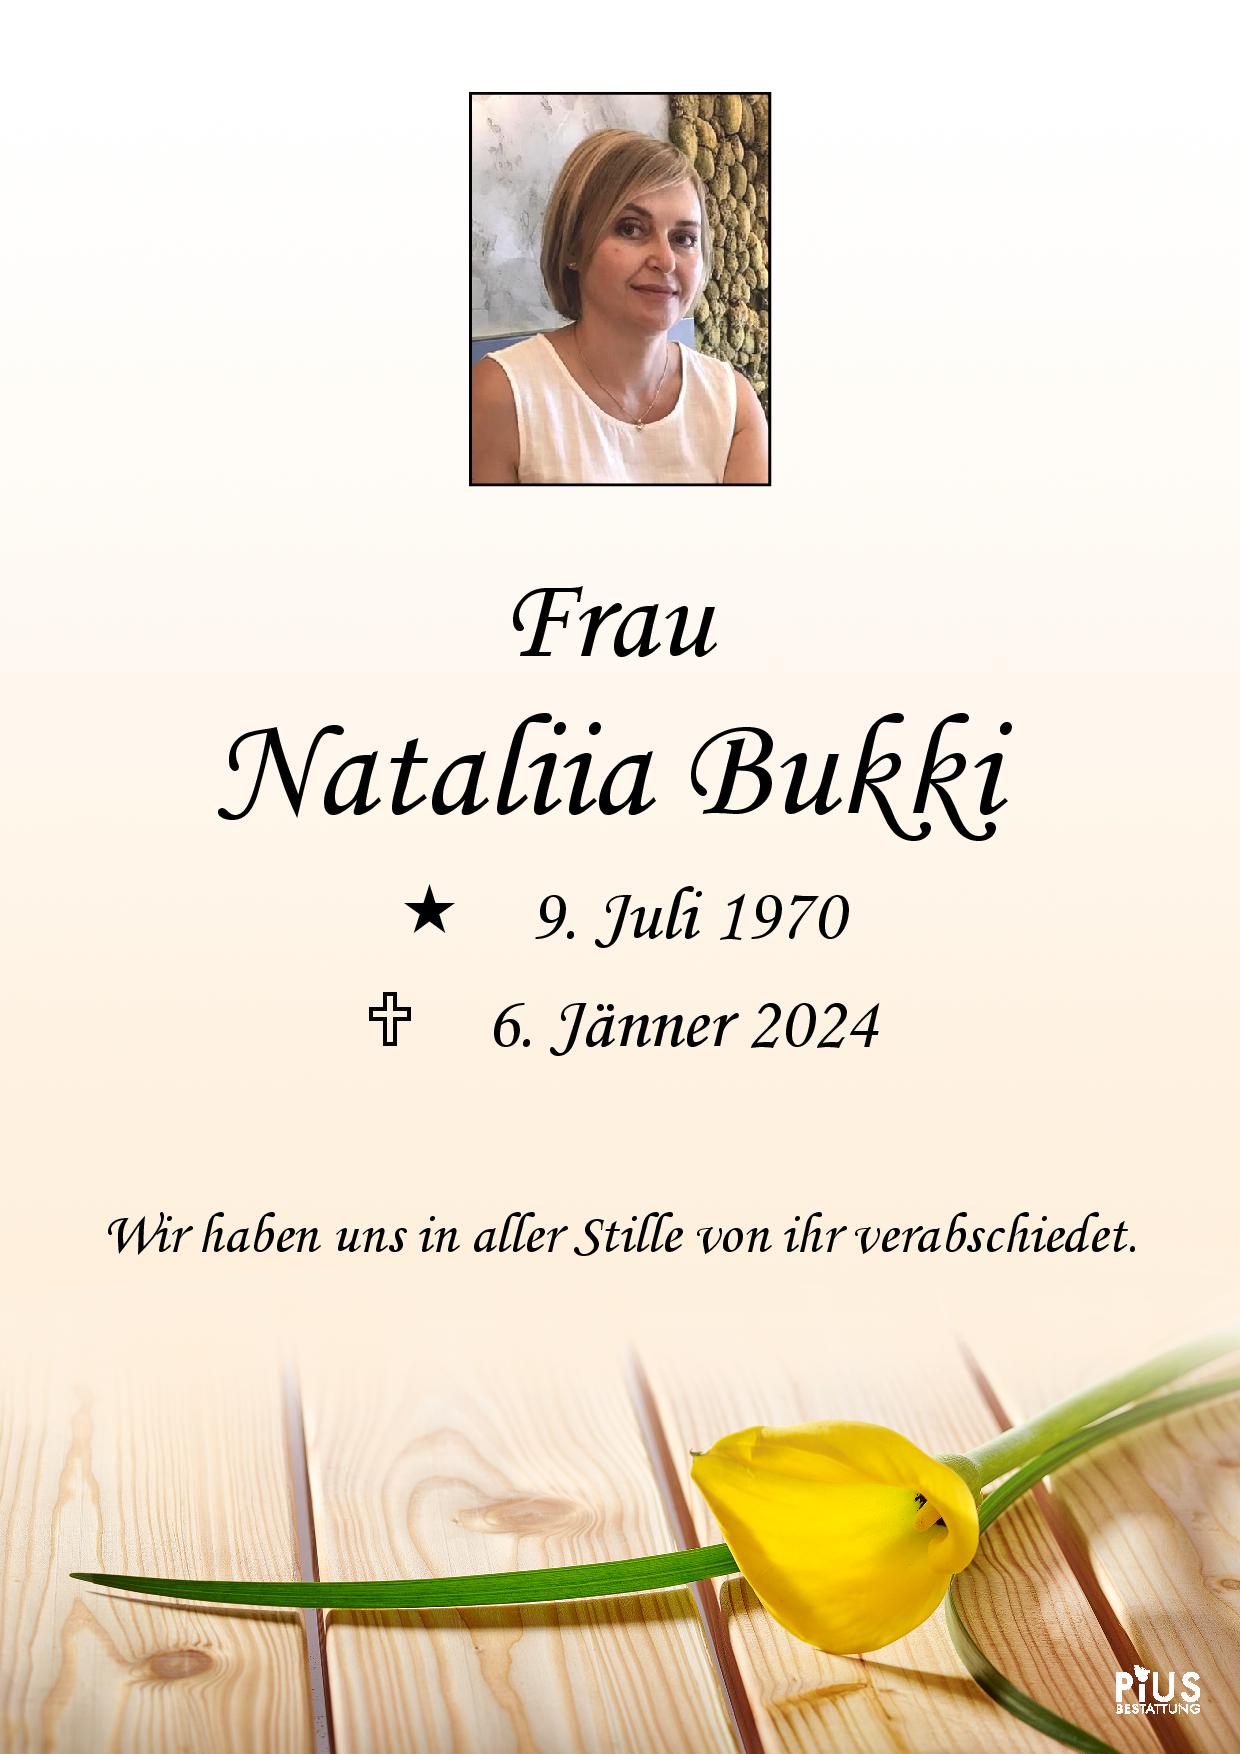 Nataliia Bukki